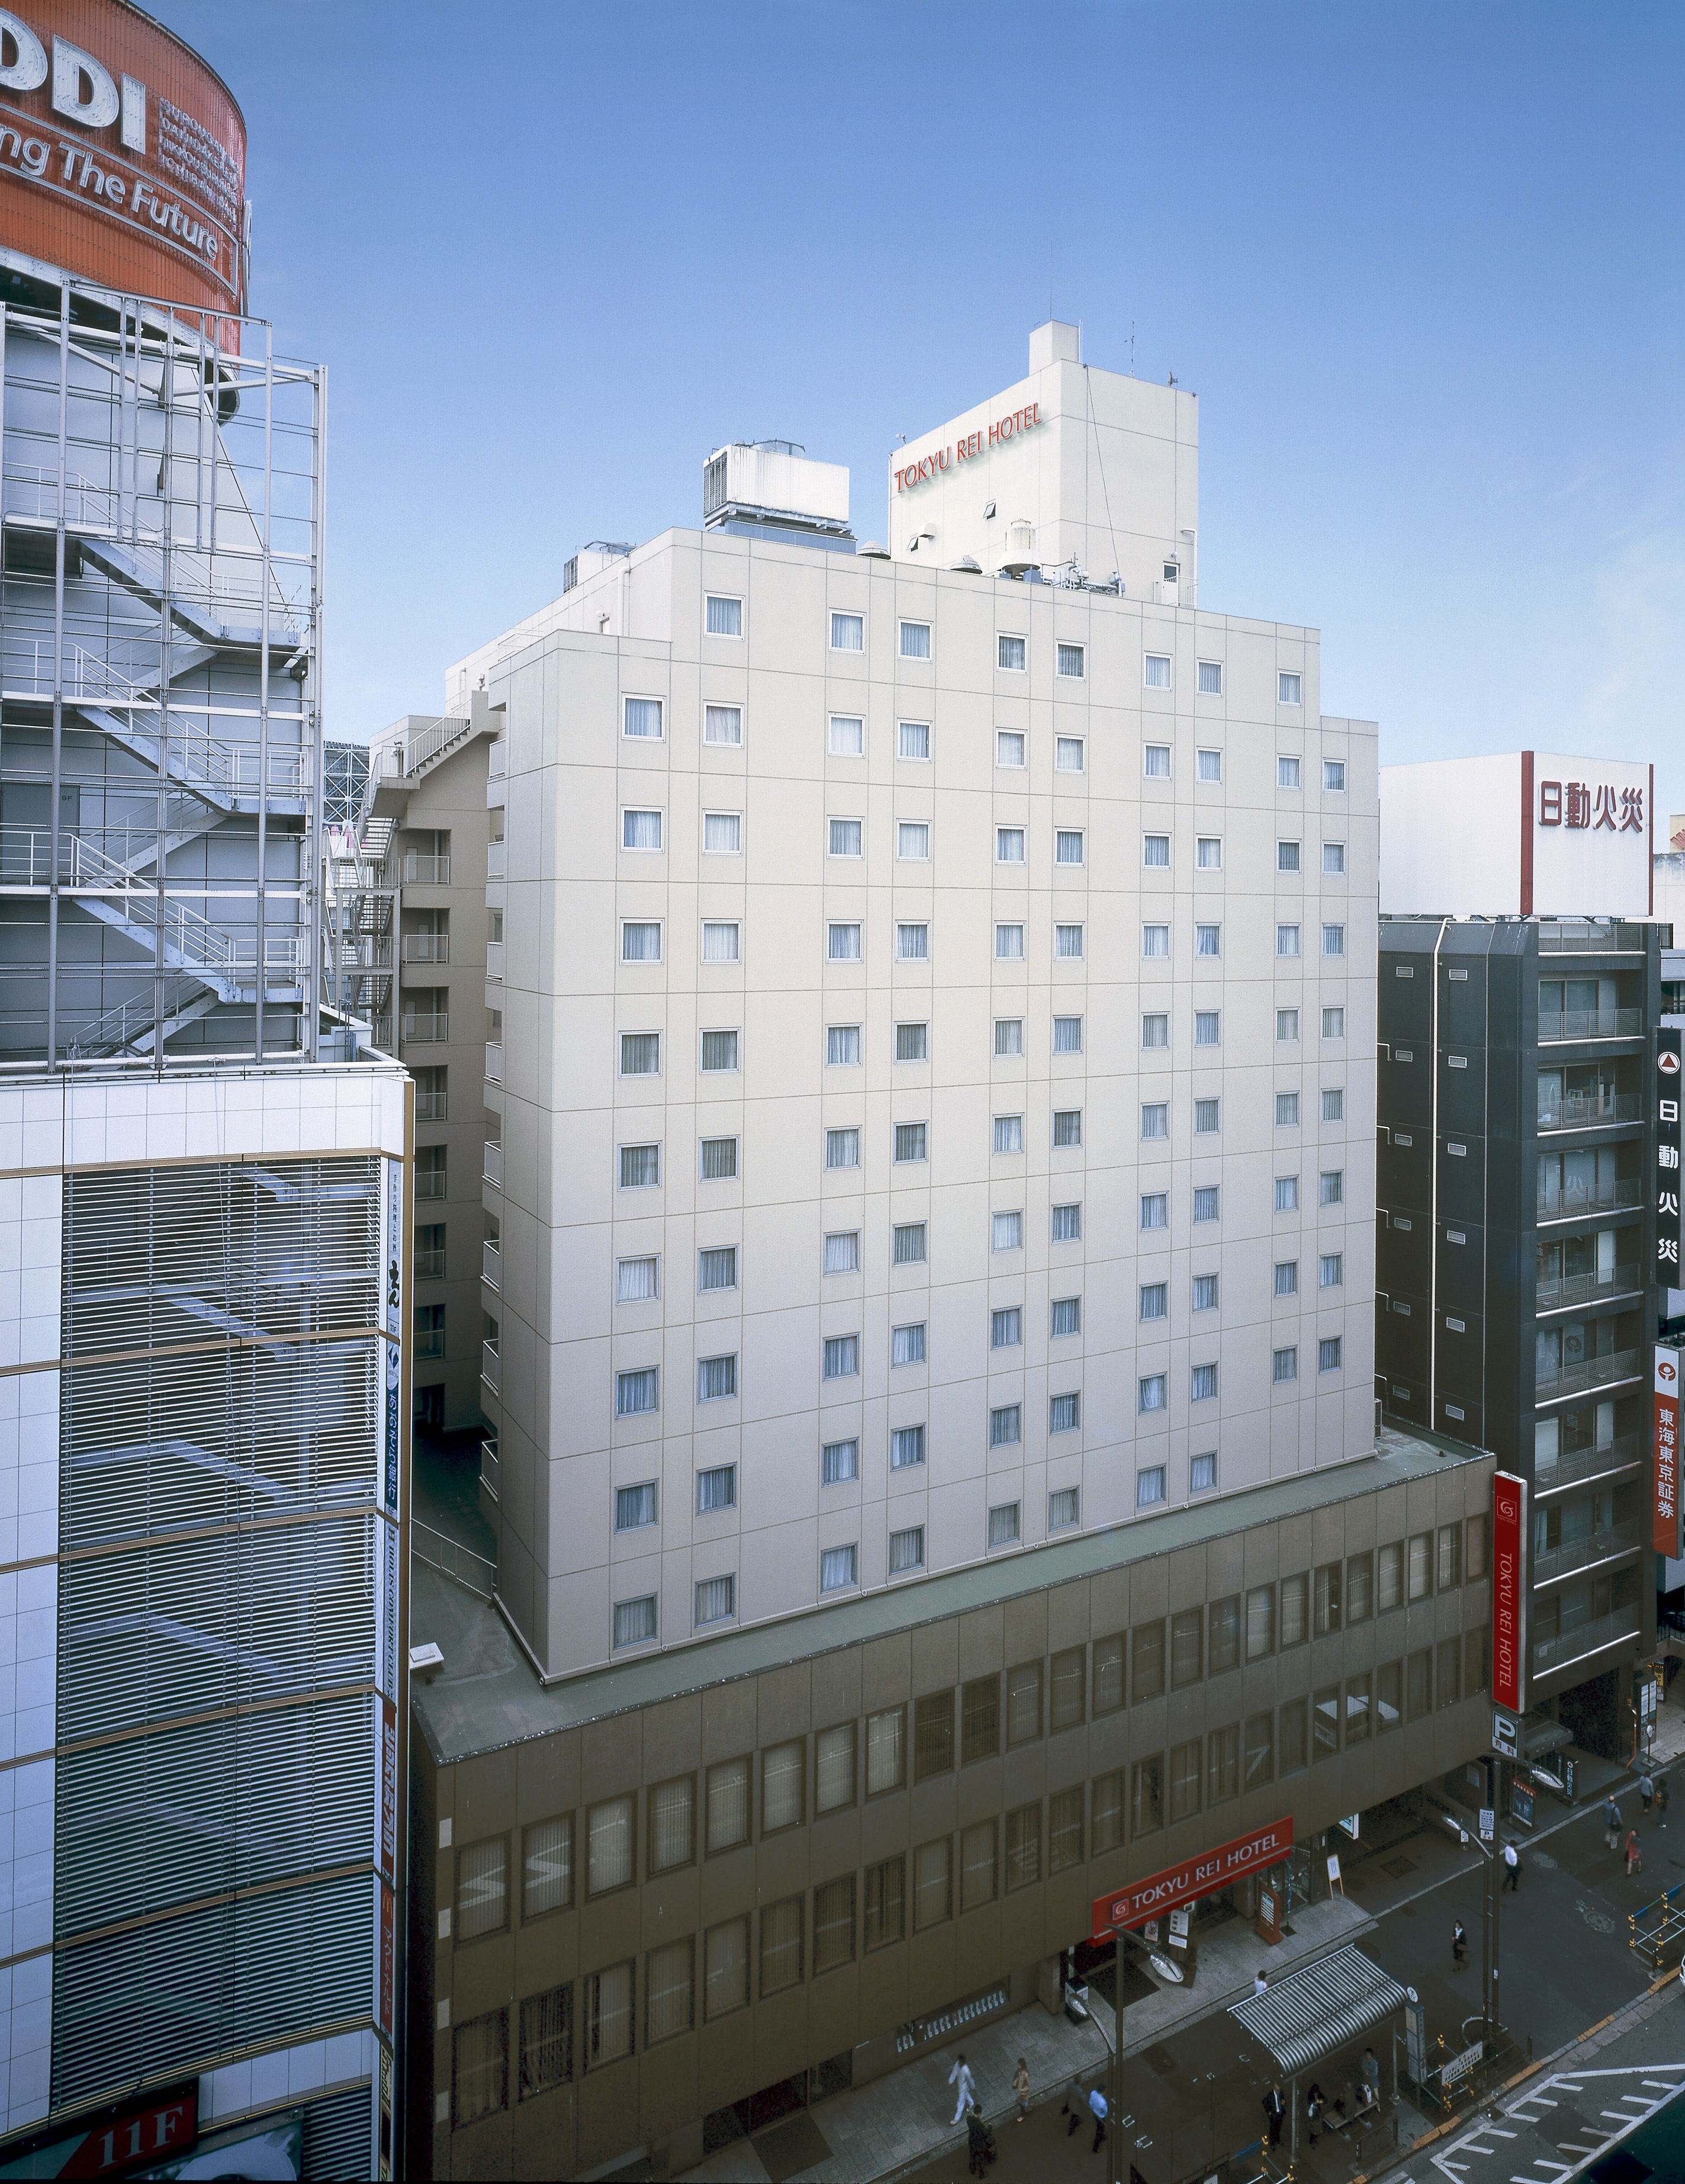 【帰宅困難】渋谷駅周辺の当日泊まれる部屋数が多い格安ホテル